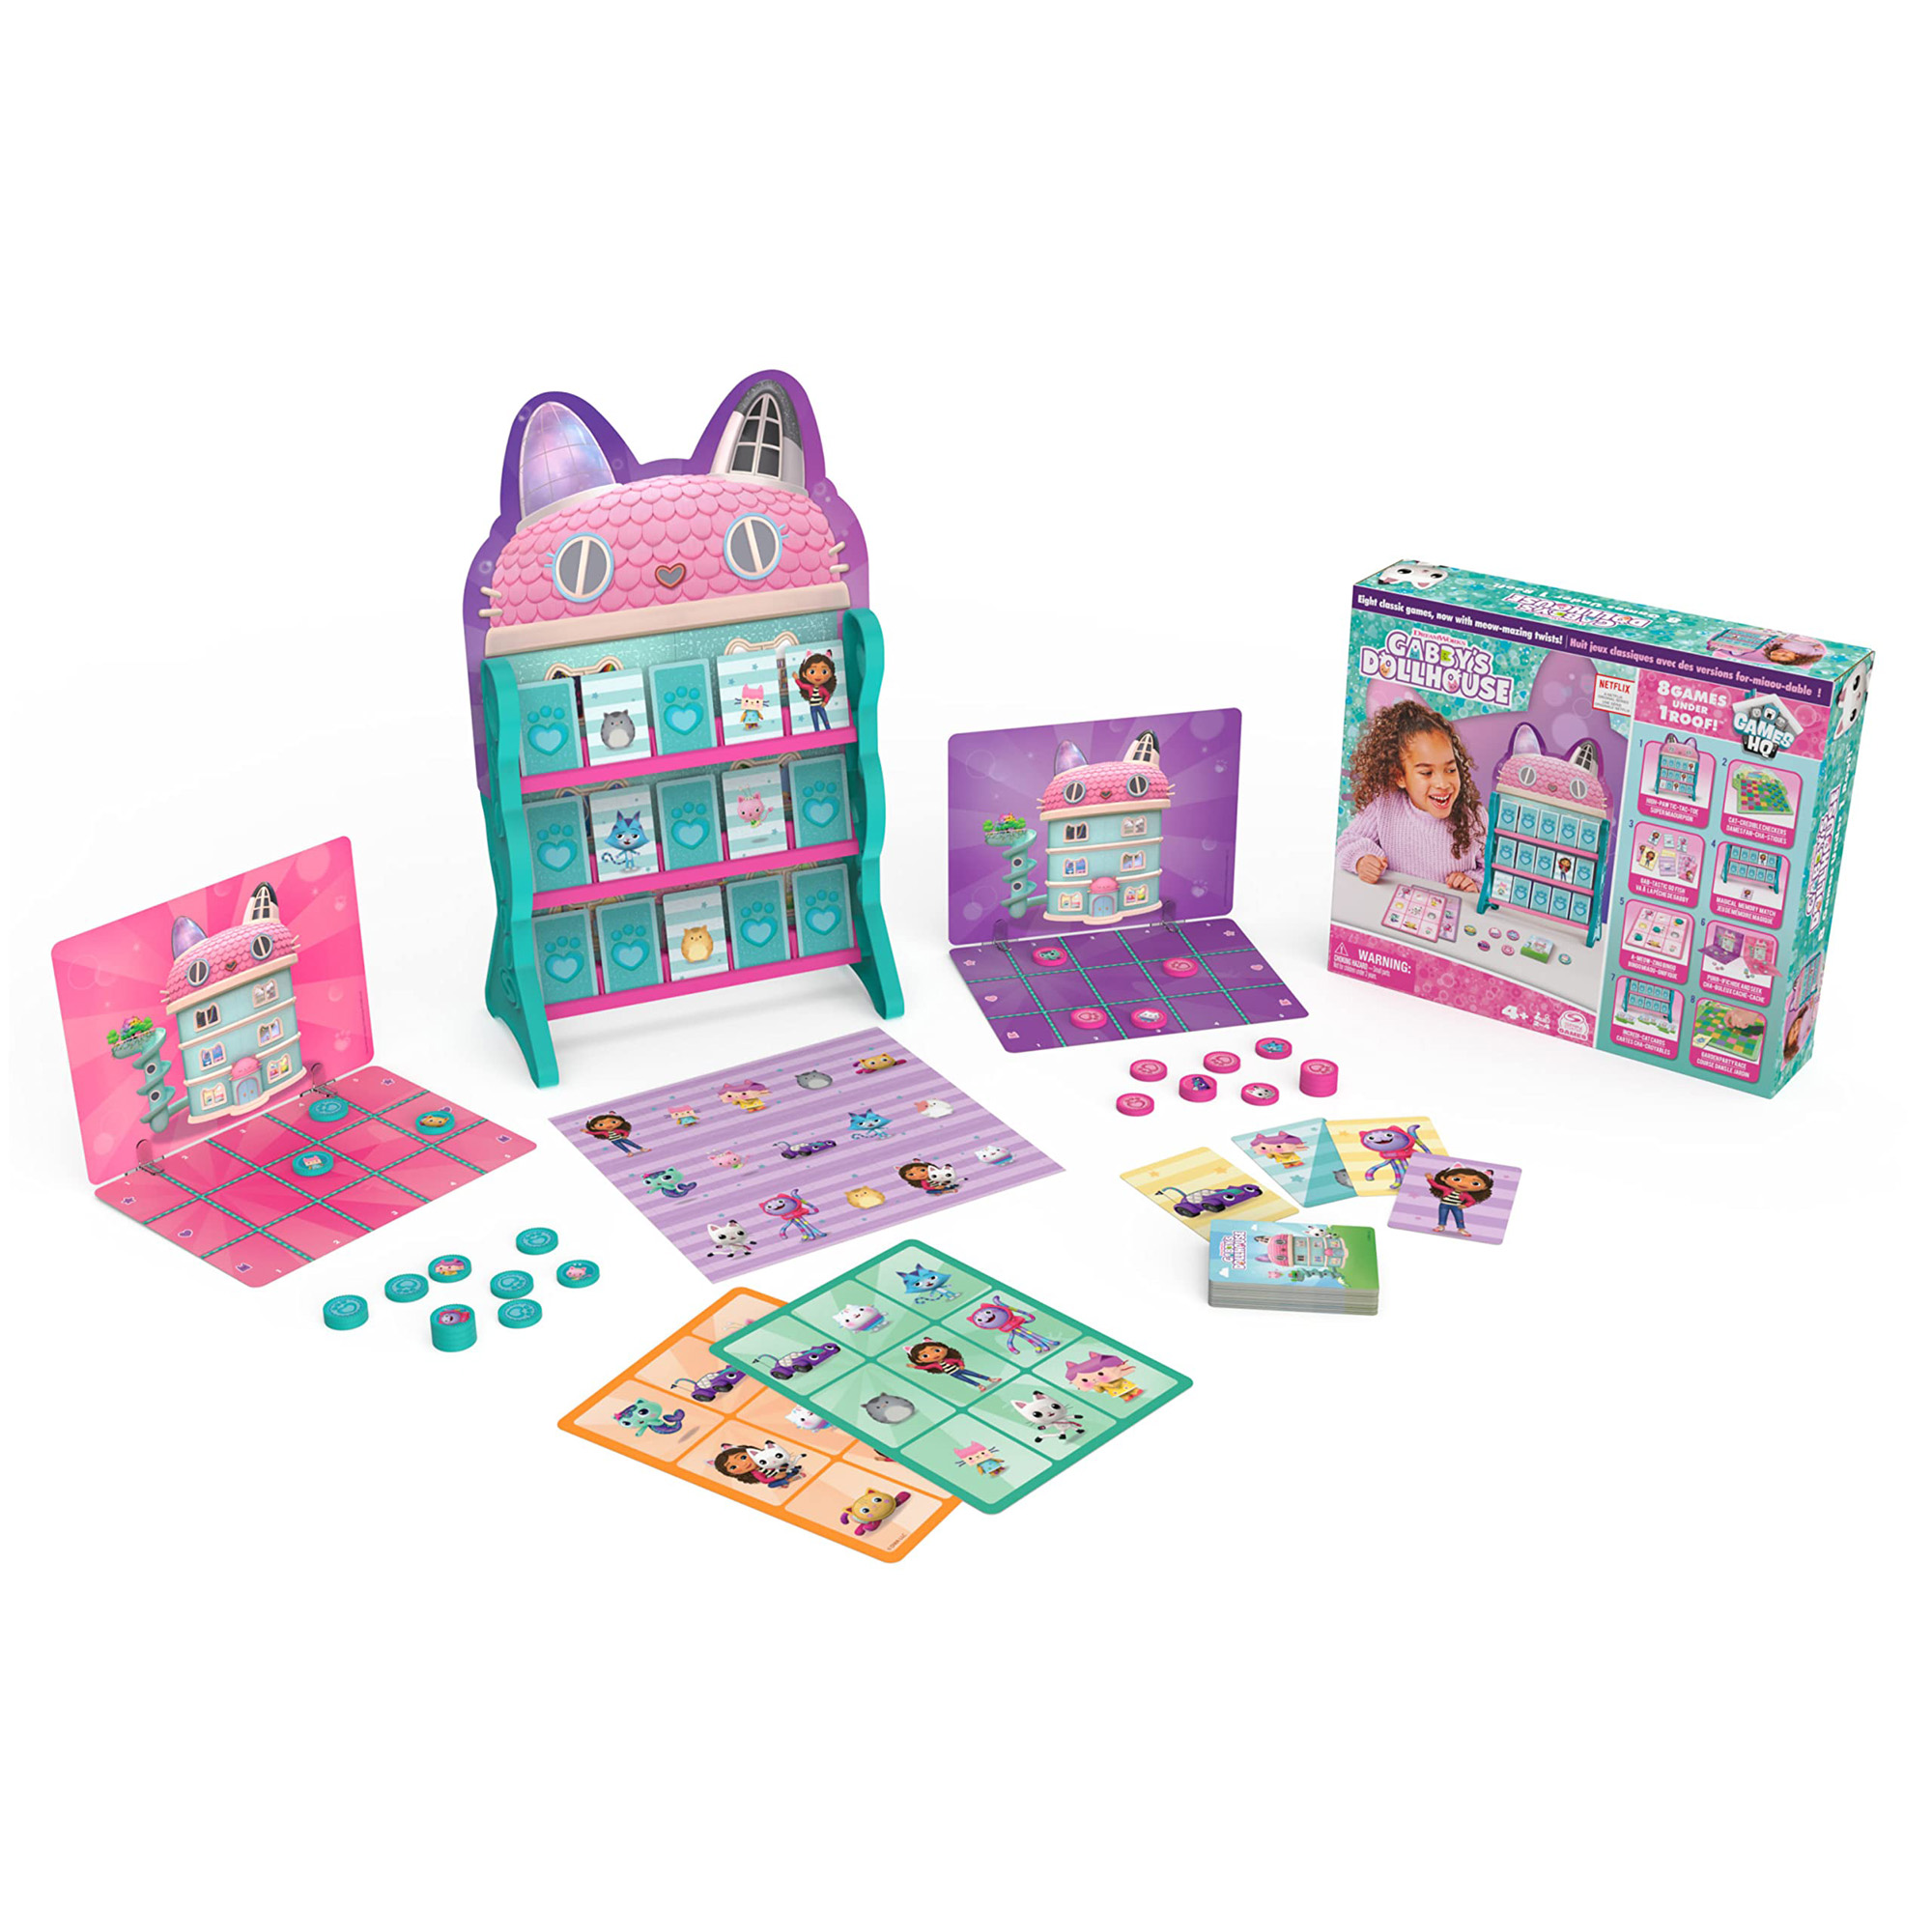 8 Giochi in Scatola in 1 Confezione, Gabby's Dollhouse in Vendita Online